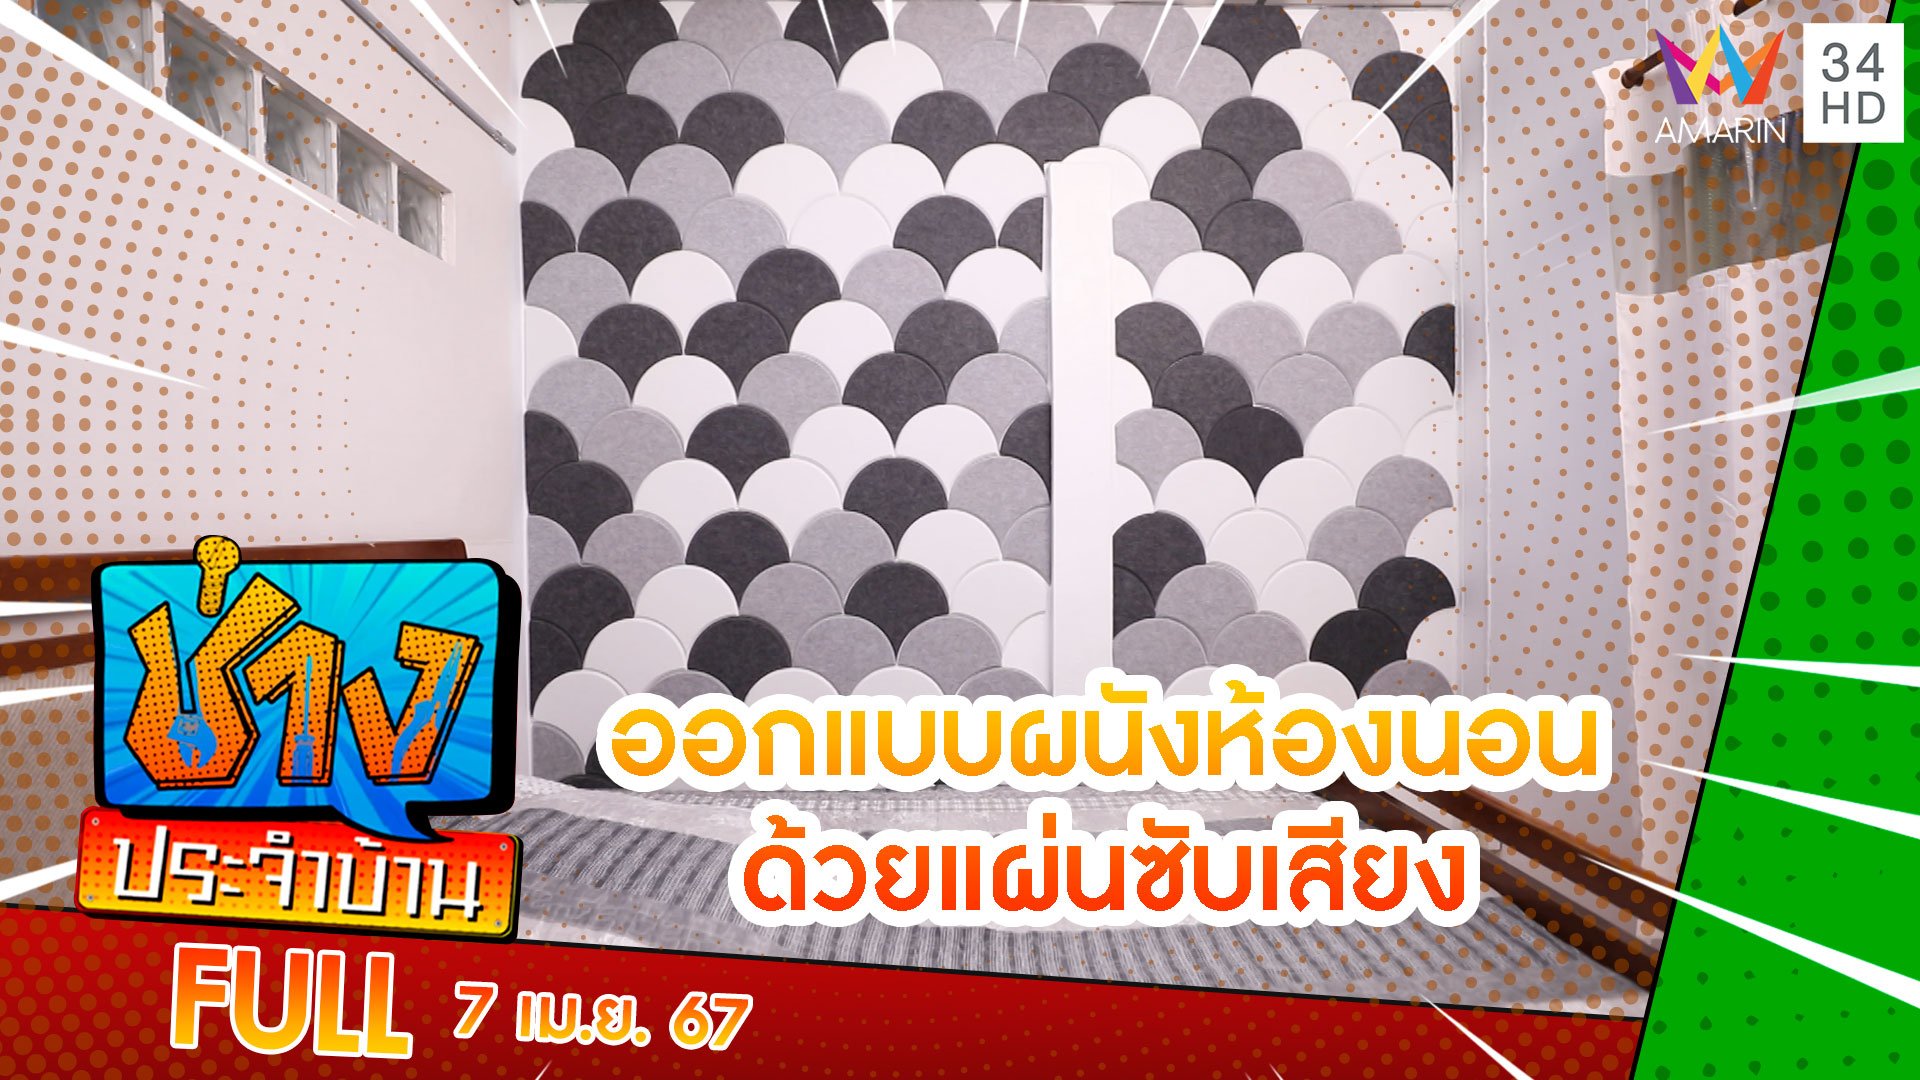 ออกแบบผนังห้องนอนด้วยแผ่นซับเสียงติดผนัง | ช่างประจำบ้าน | 7 เม.ย. 67 | AMARIN TVHD34